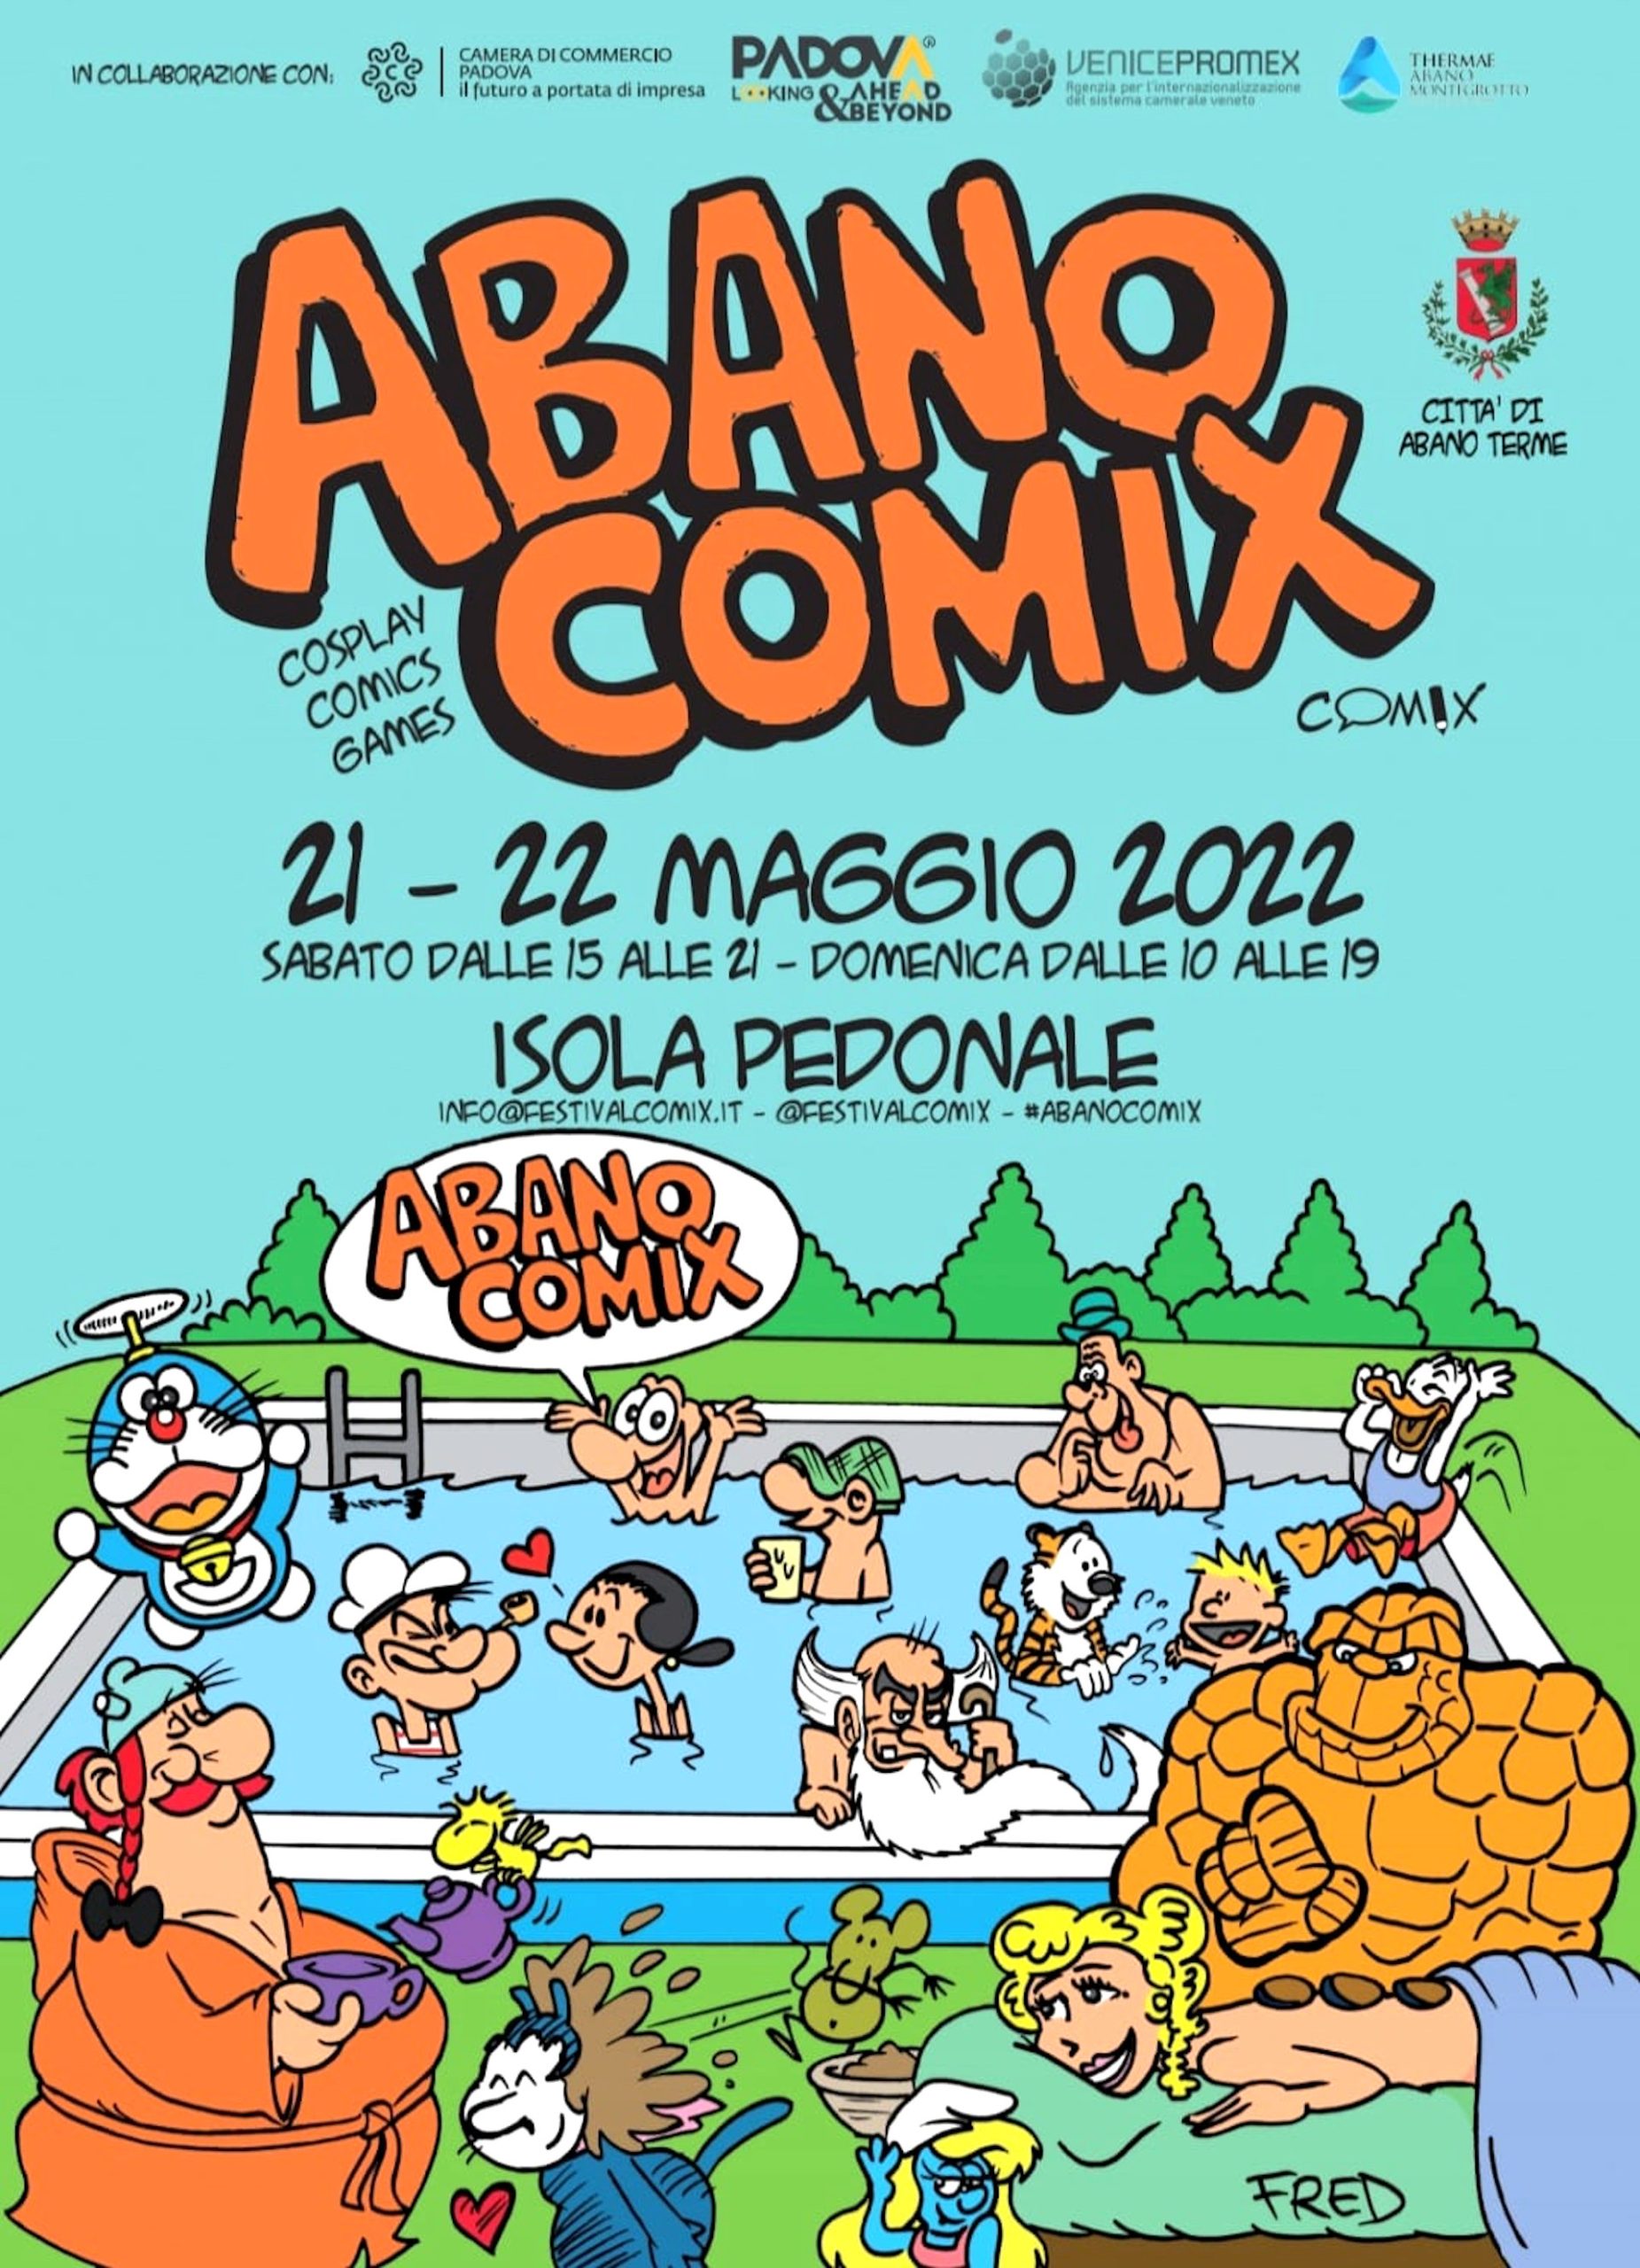 L’ottava edizione di Abano Comix: 21-22 maggio 2022